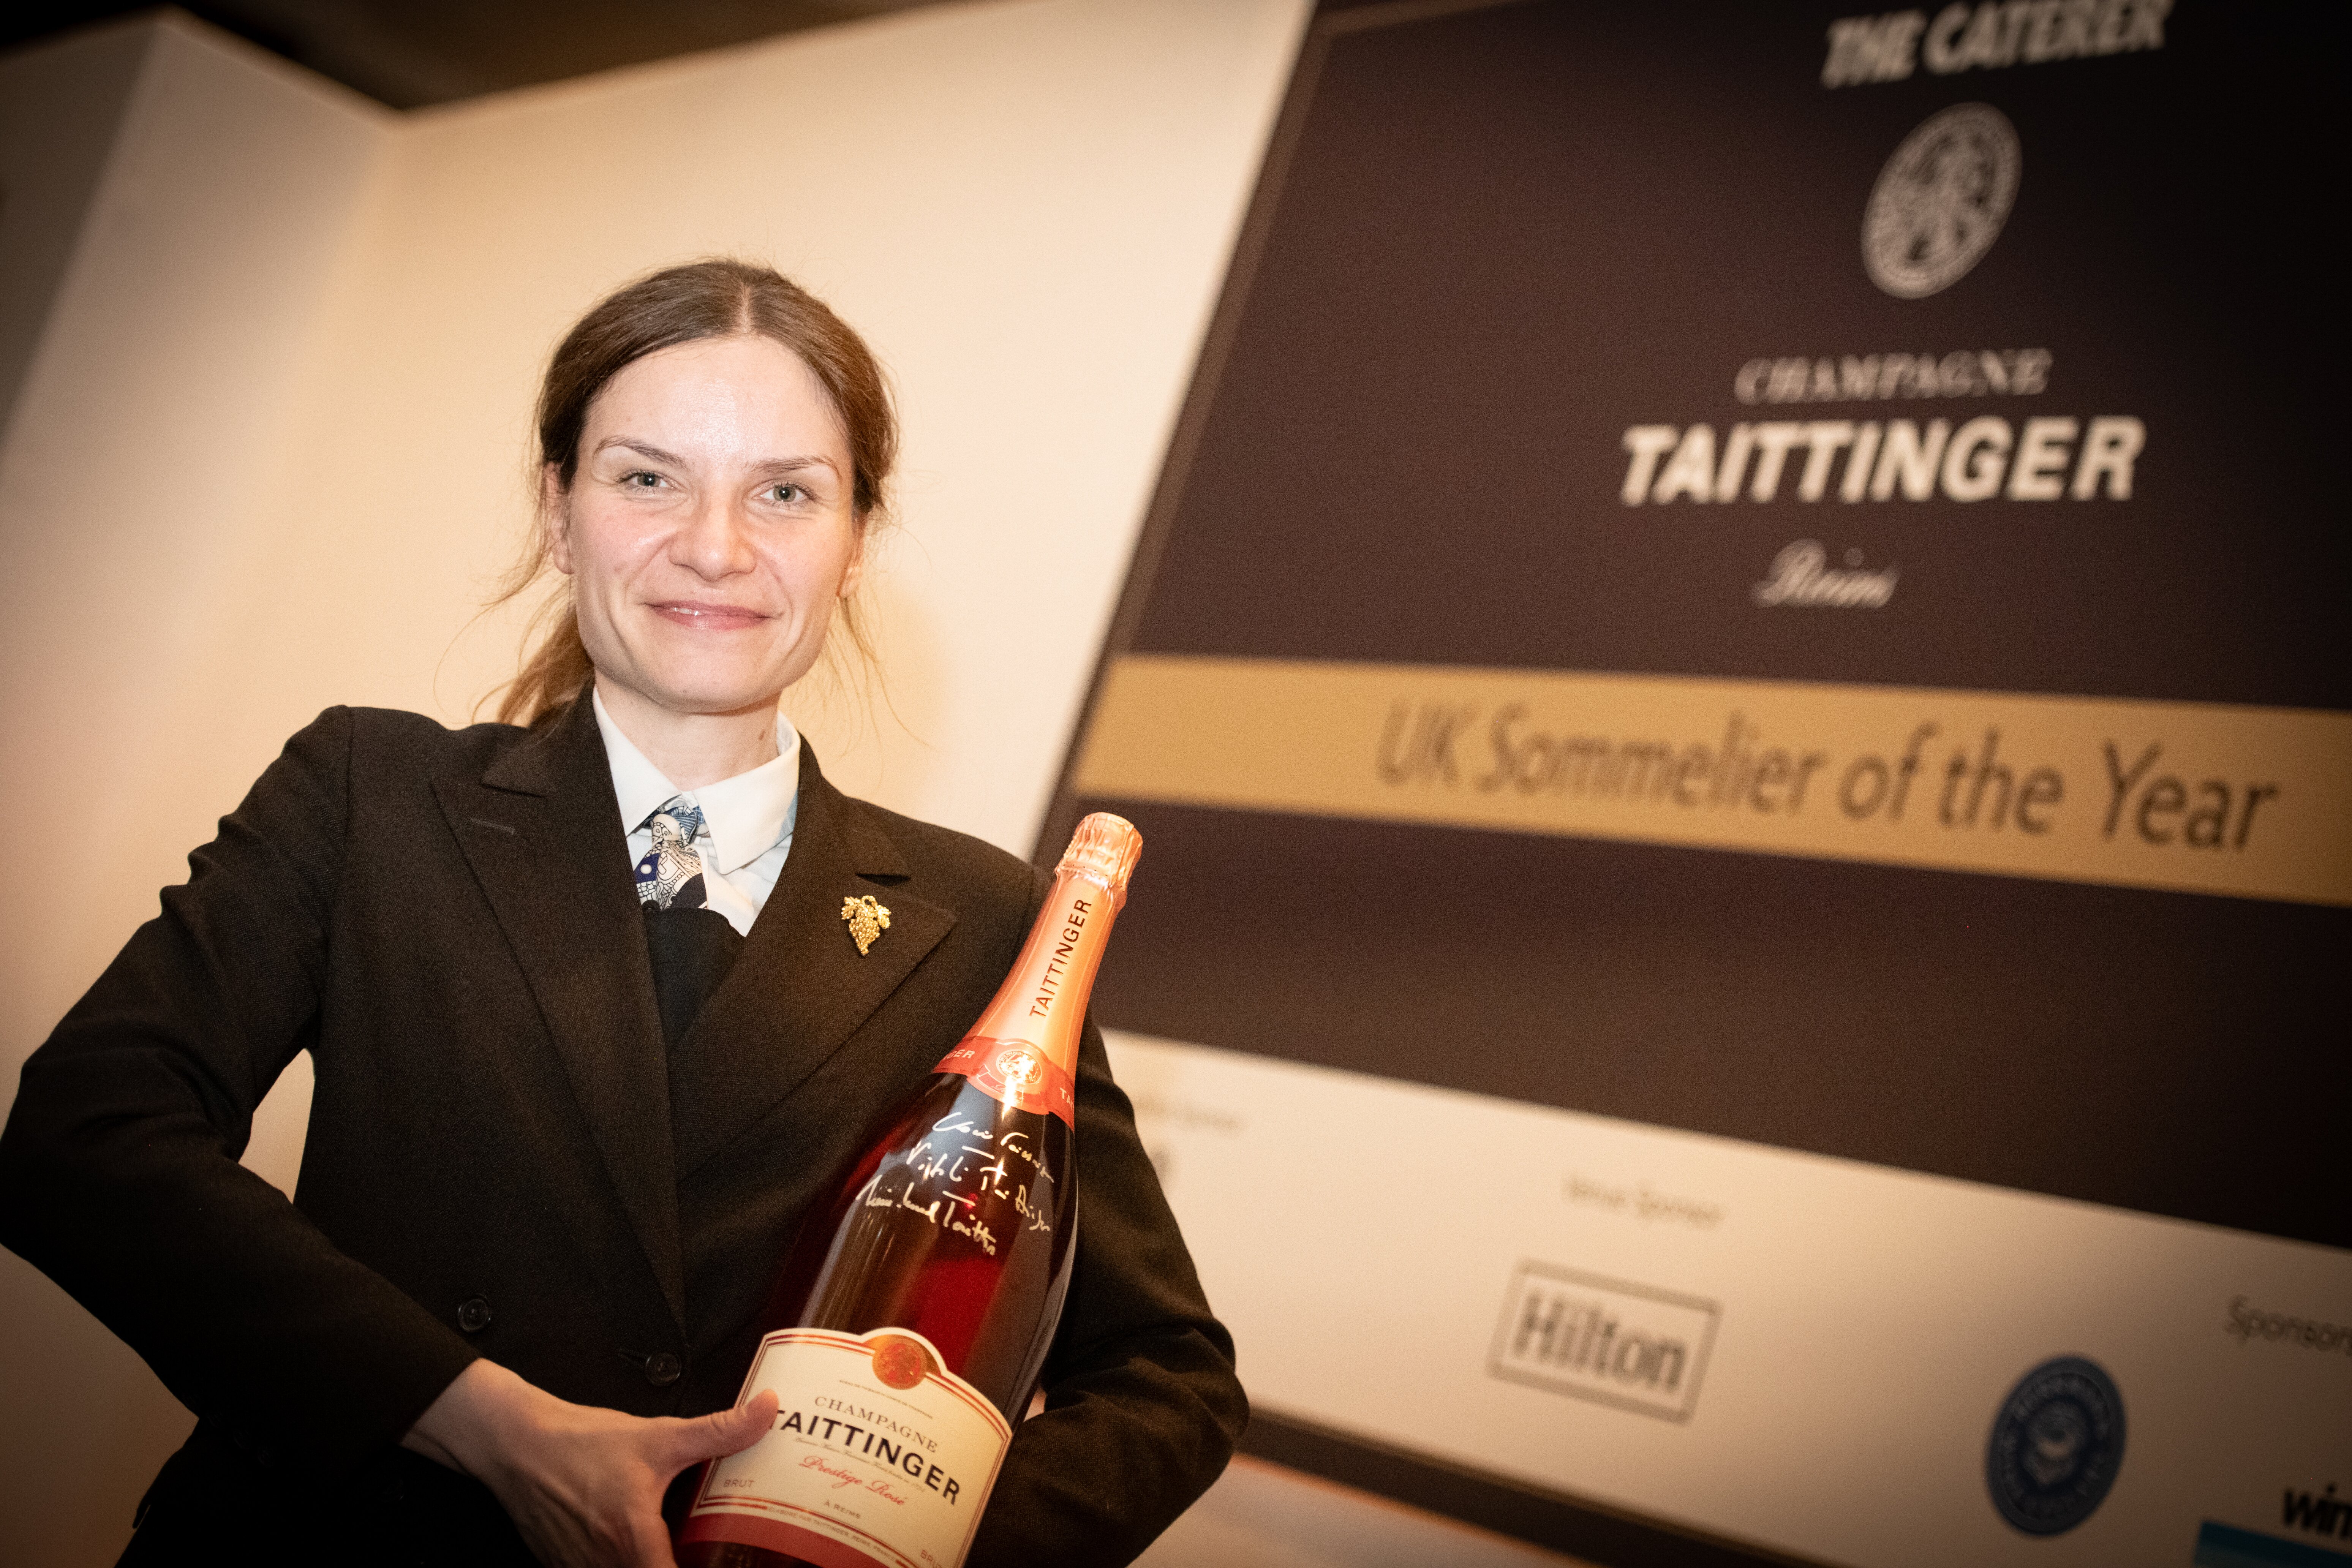 Agnieszka Swiecka named Taittinger UK Sommelier of the Year 2023